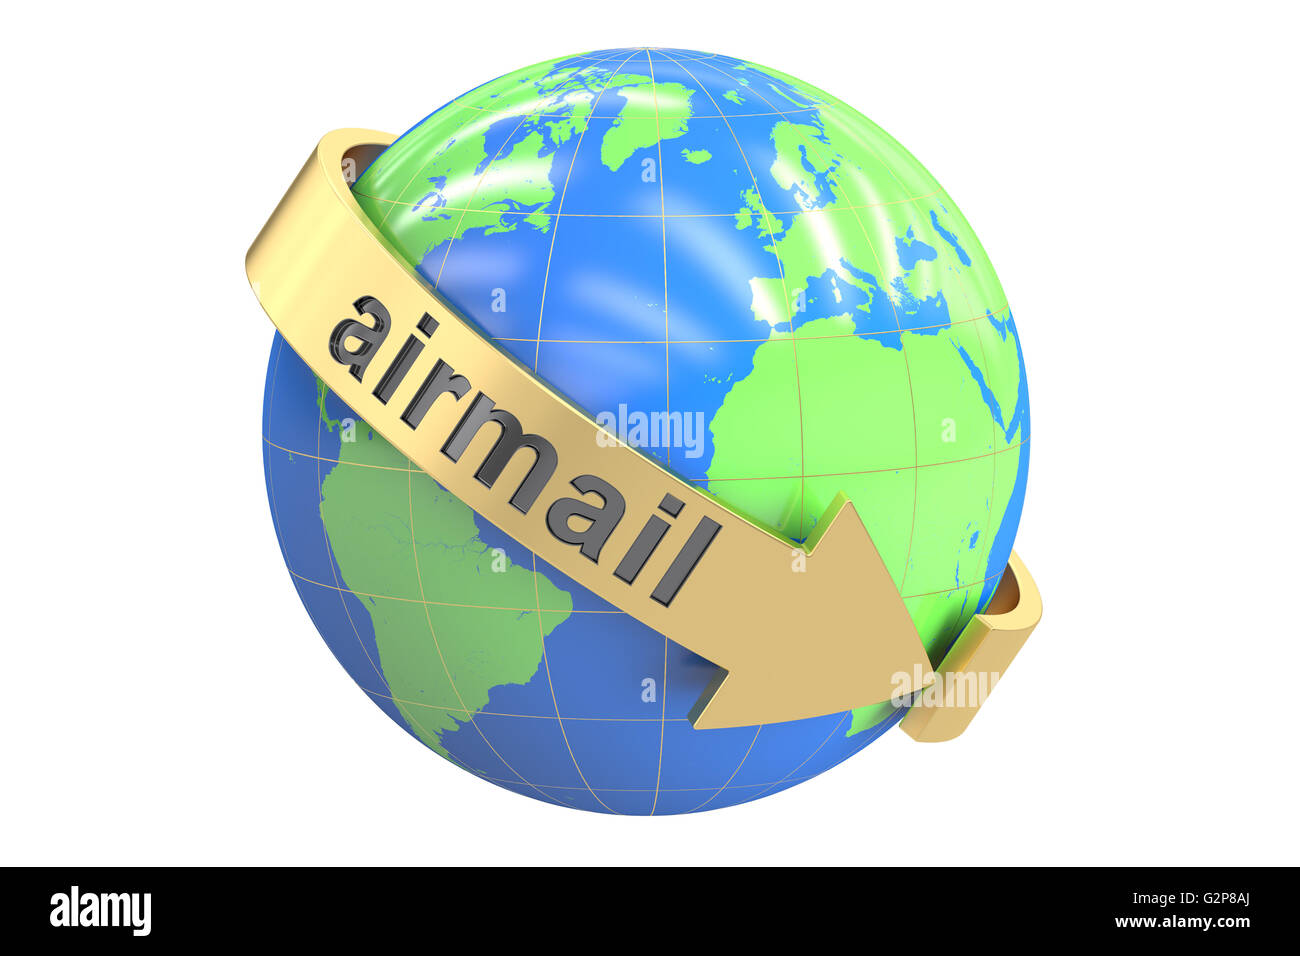 Concepto de correo aéreo global, 3D rendering aislado sobre fondo blanco. Foto de stock